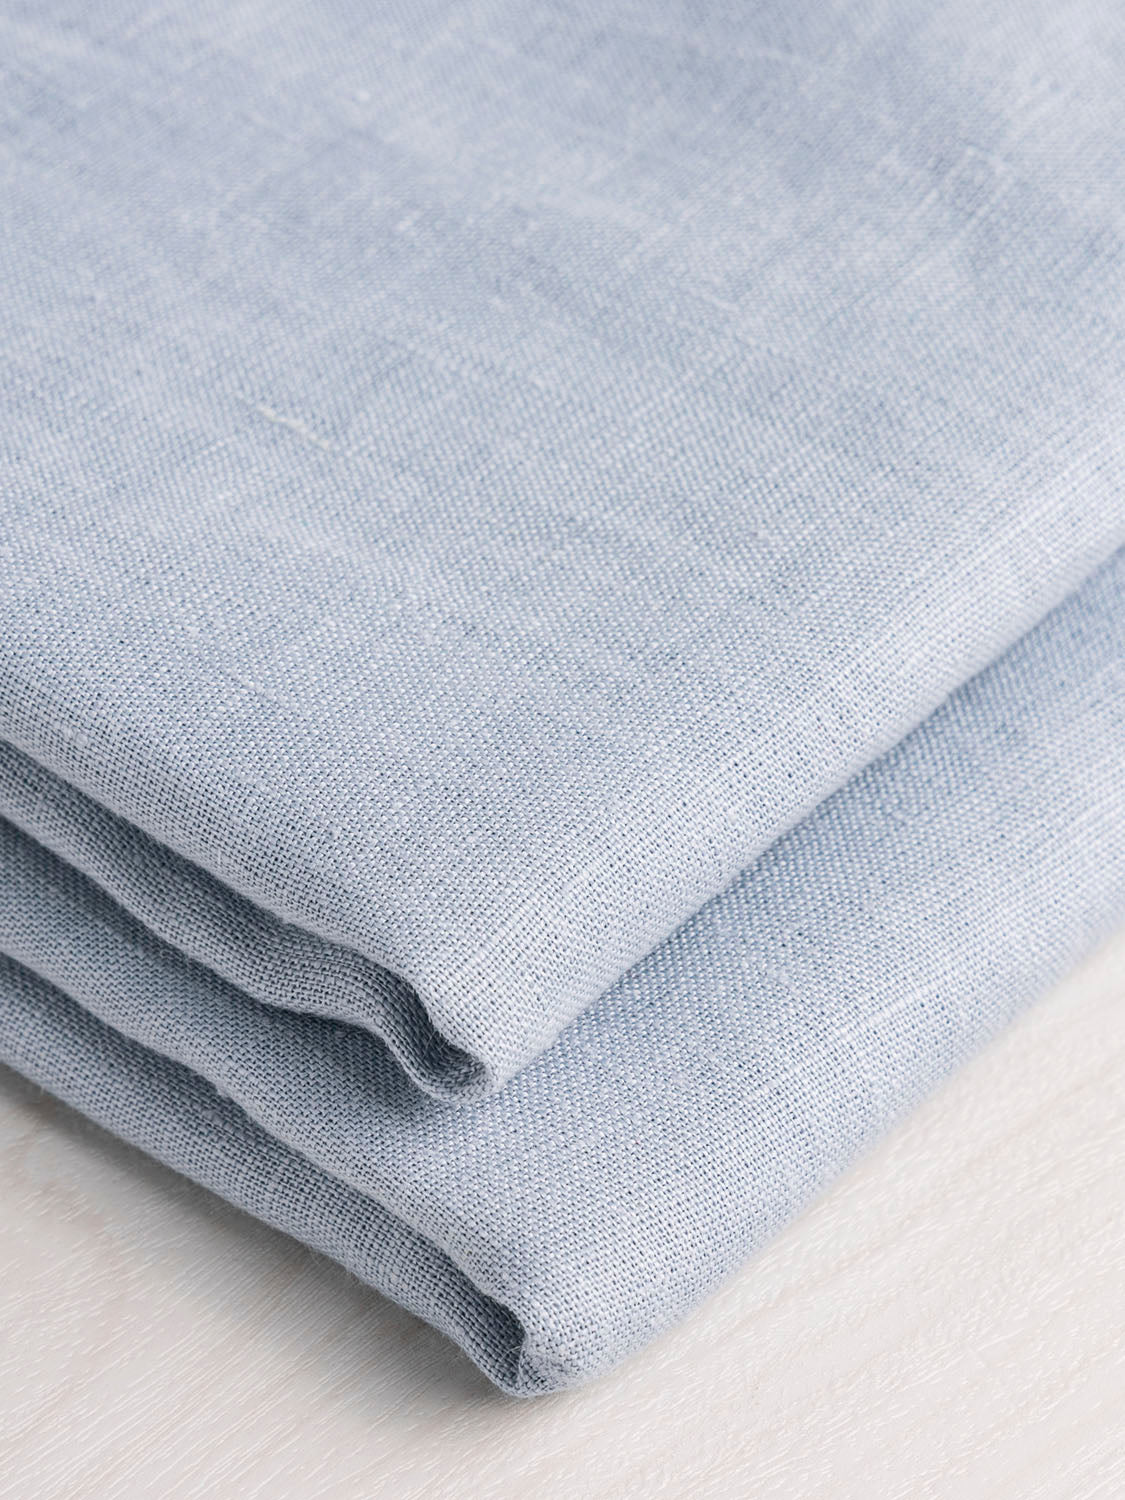 Midweight Linen - Light Blue | Core Fabrics